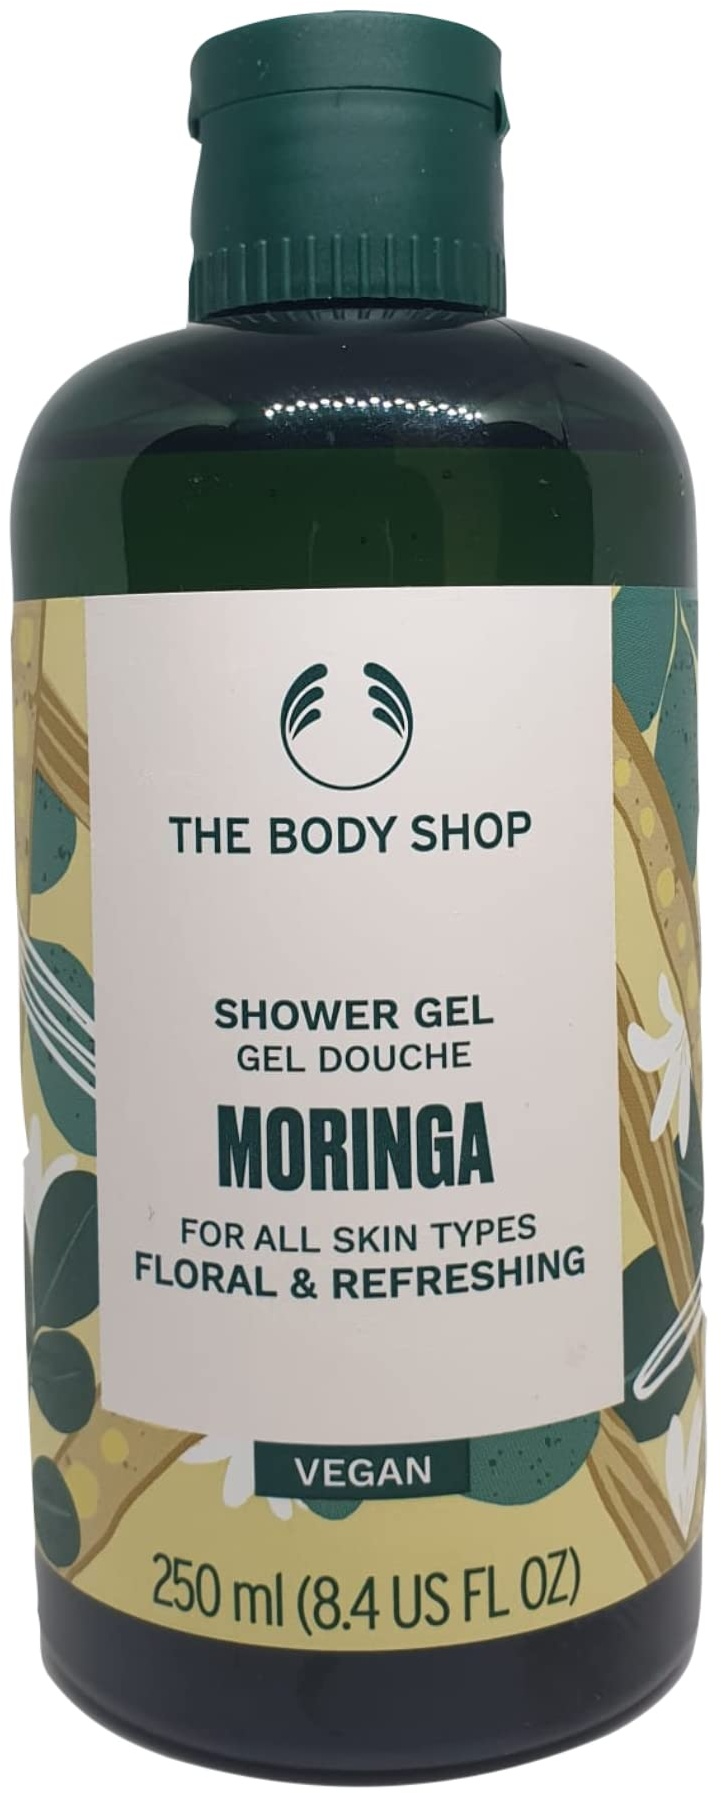 The Body Shop MORINGA Duschgel für alle Hauttypen ErfrischendBlumiger Duft Dermatologisch getestet Vegane Badekosmetik Flasche 250 ml